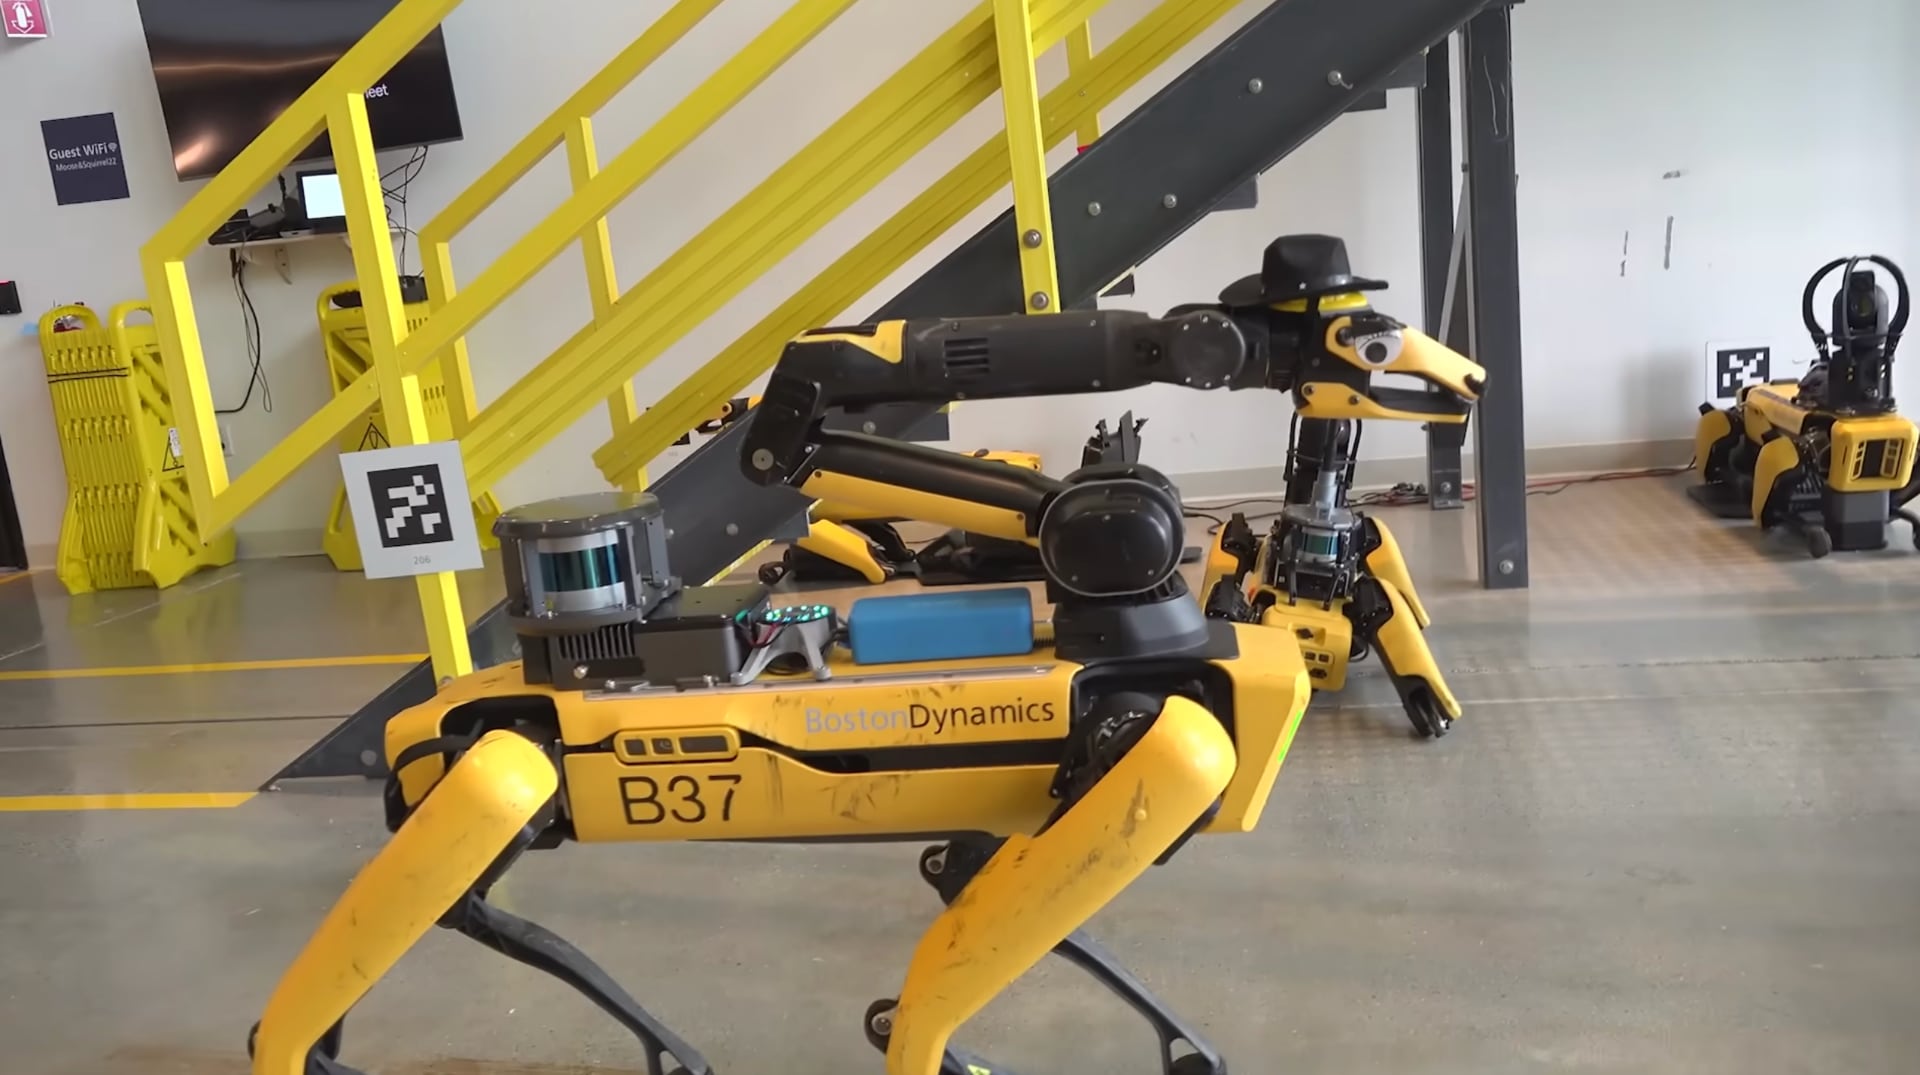 Boston Dynamics bringt dem Roboter Spot das Sprechen bei (ja, mit ChatGPT und anderen KI-Modellen) - Video